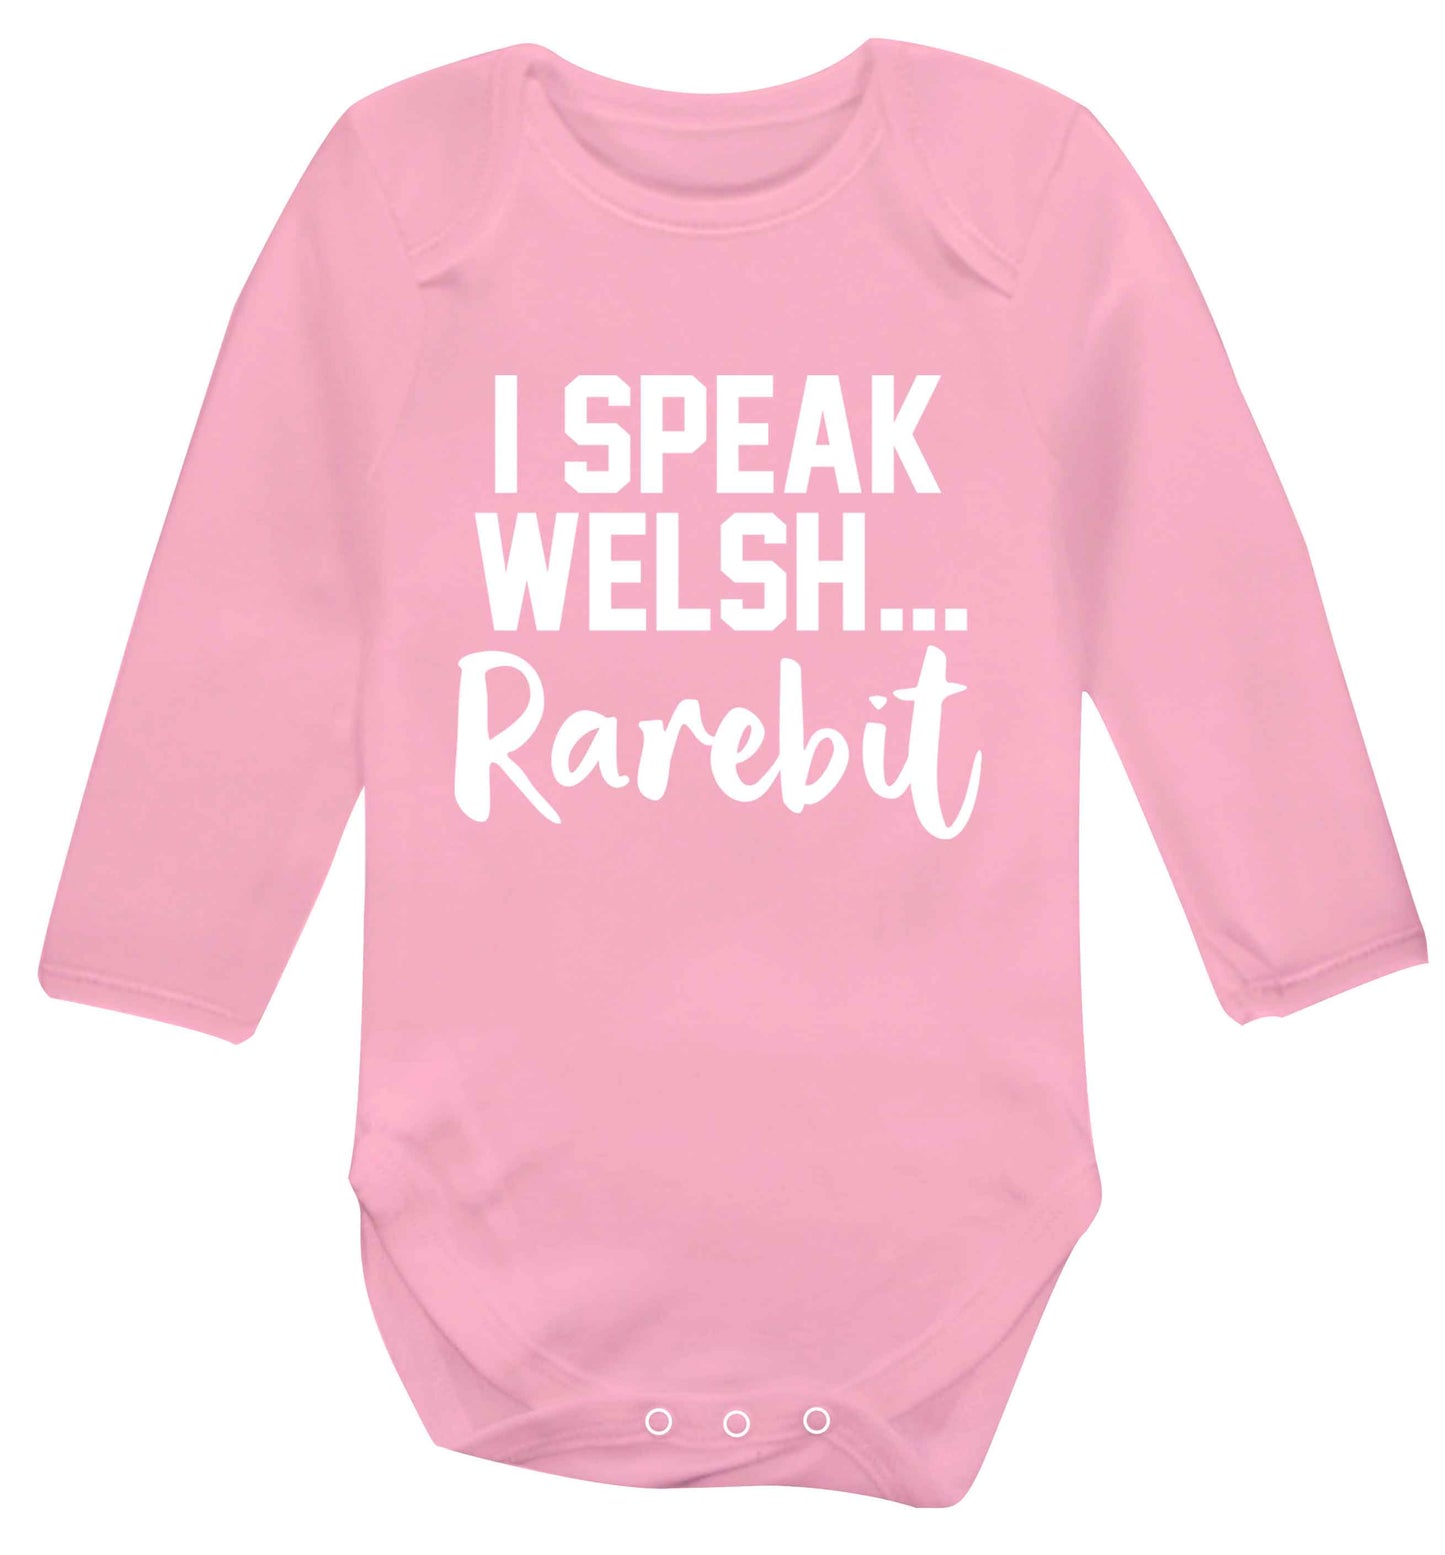 I speak Welsh...rarebit Baby Vest long sleeved pale pink 6-12 months